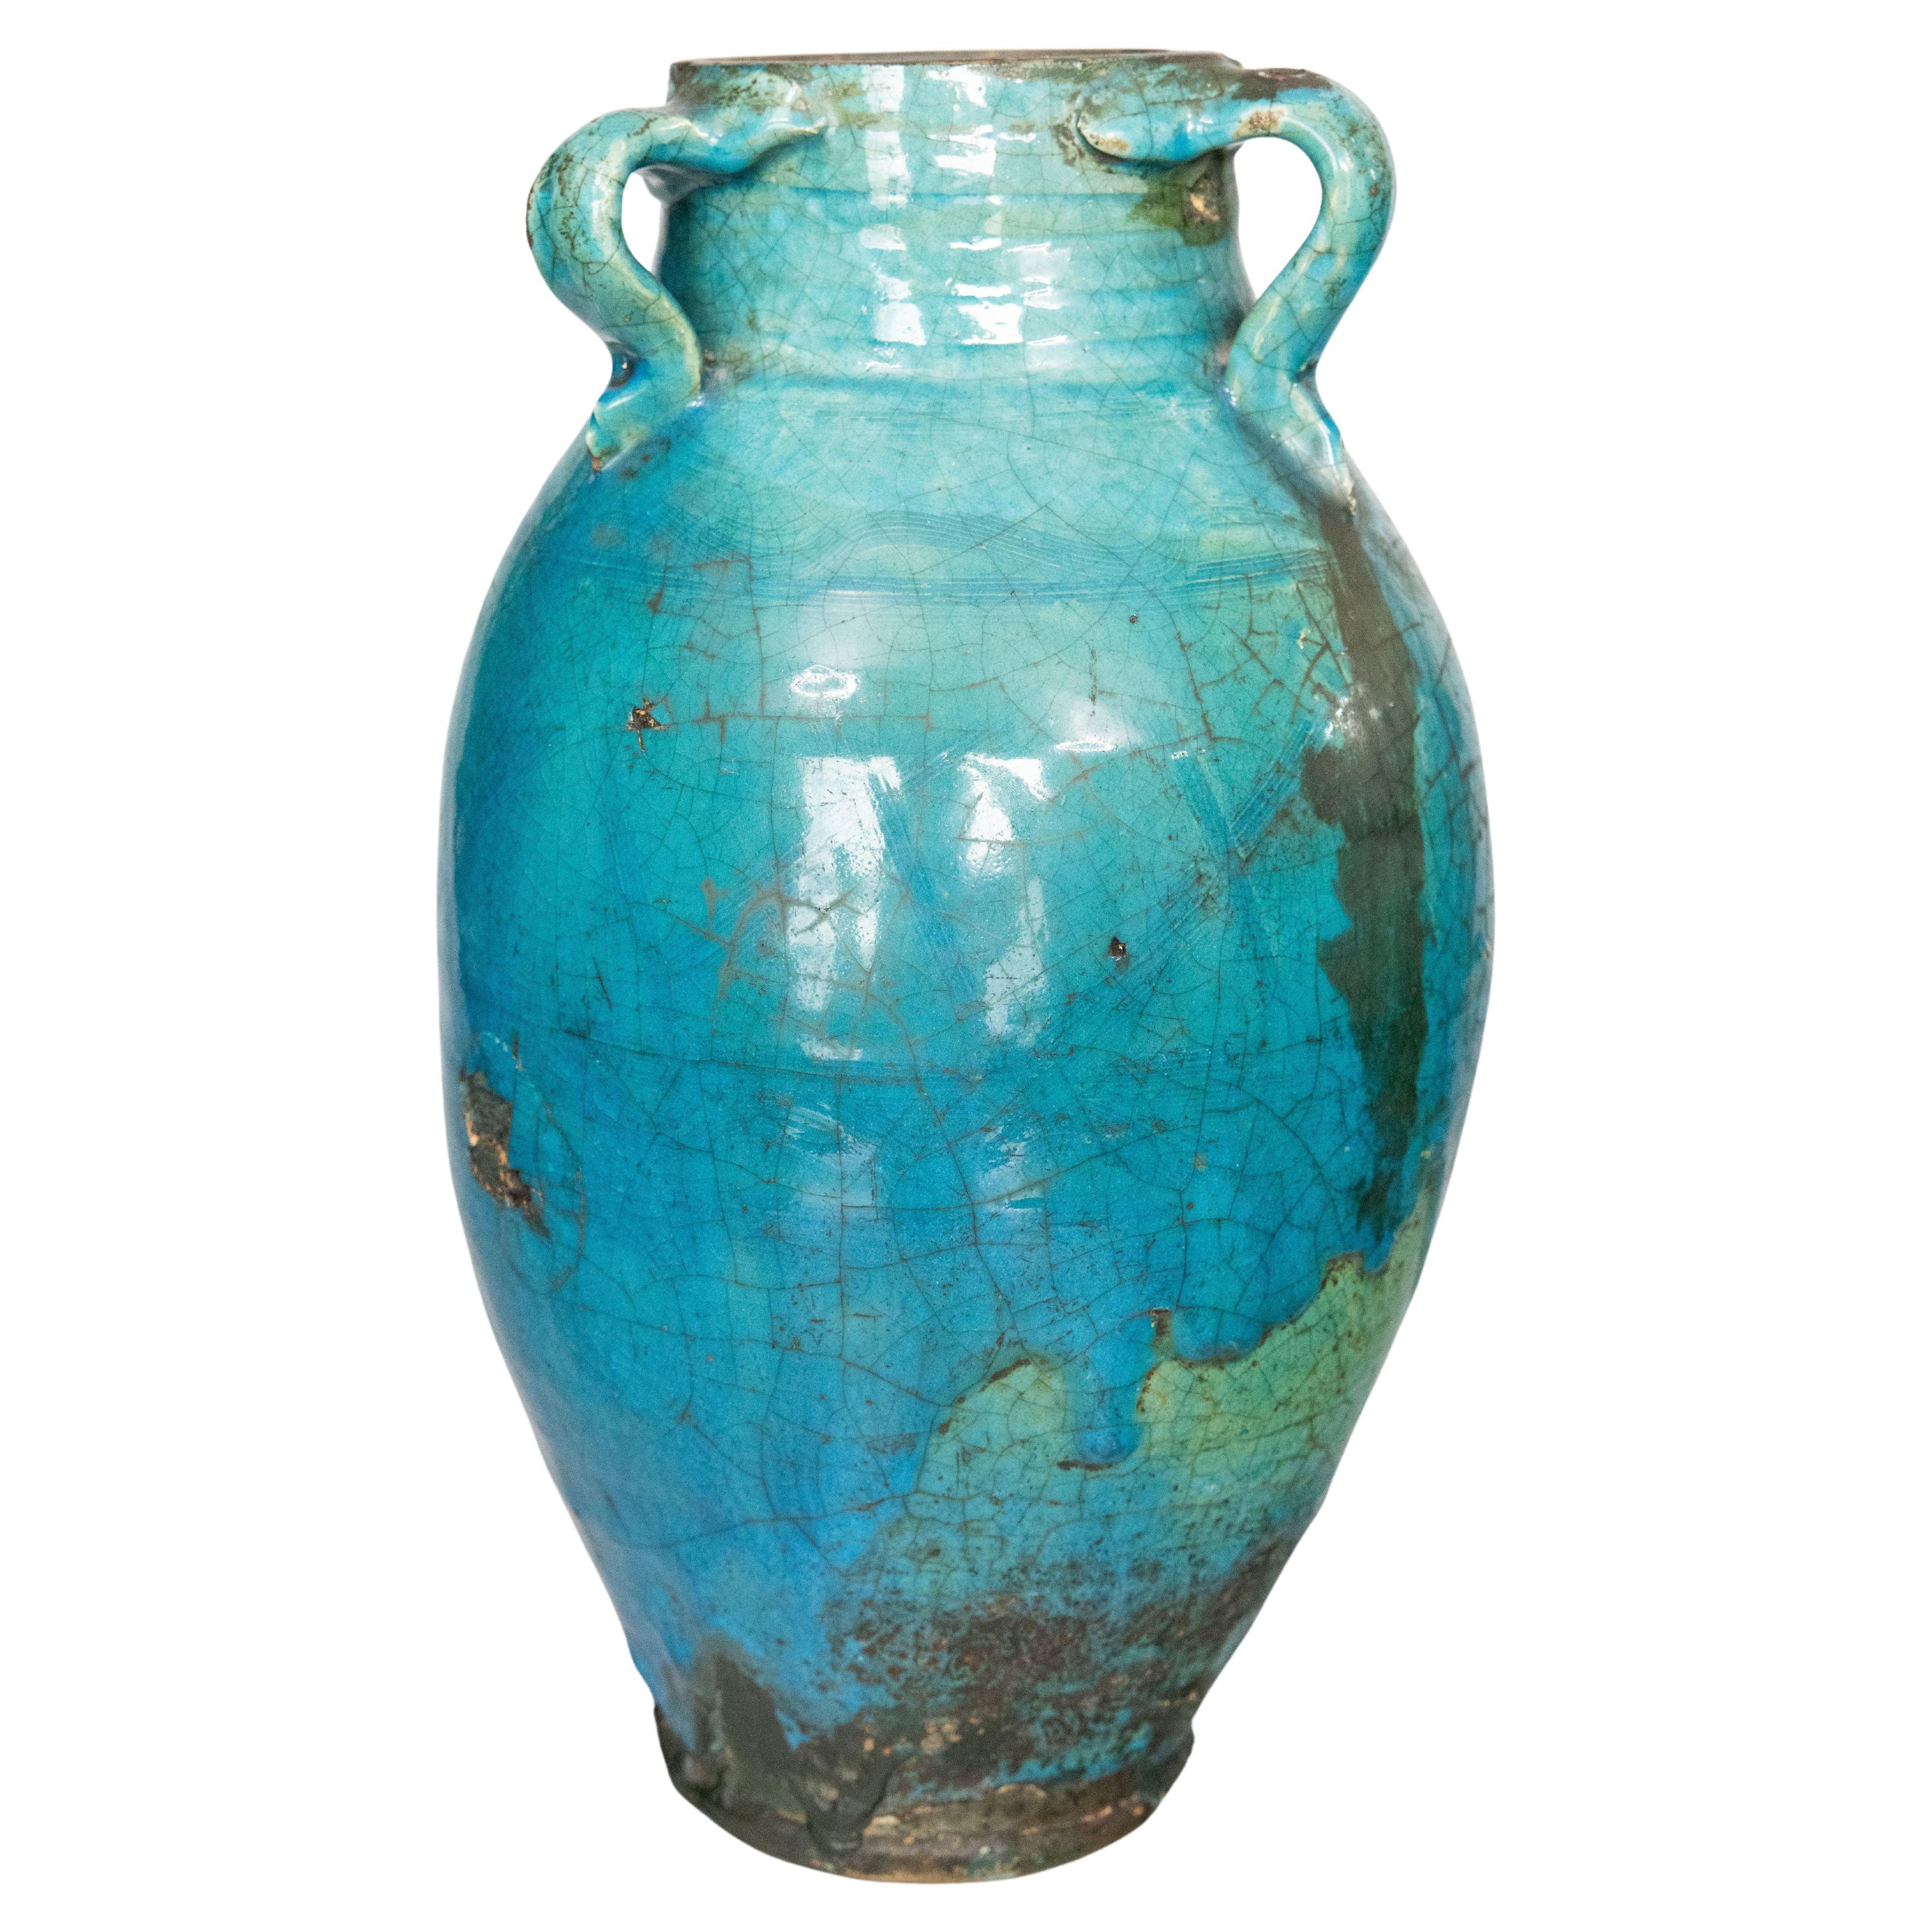 Grand vase français du 19ème siècle en terre cuite émaillée turquoise